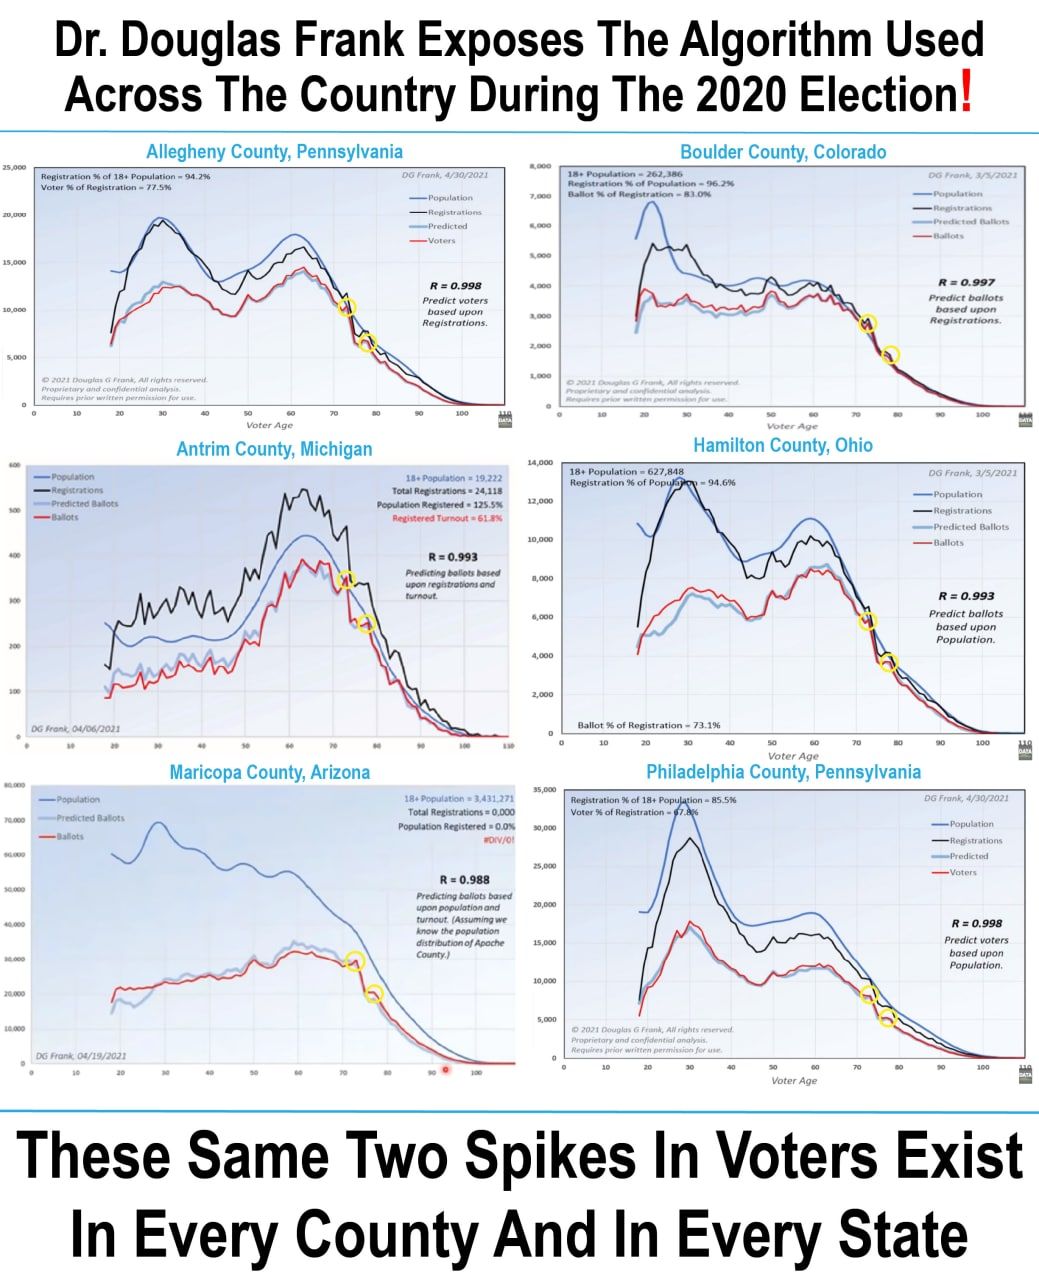 Descubren el algoritmo usado en cada condado y estado USA para alterar el resultado electoral